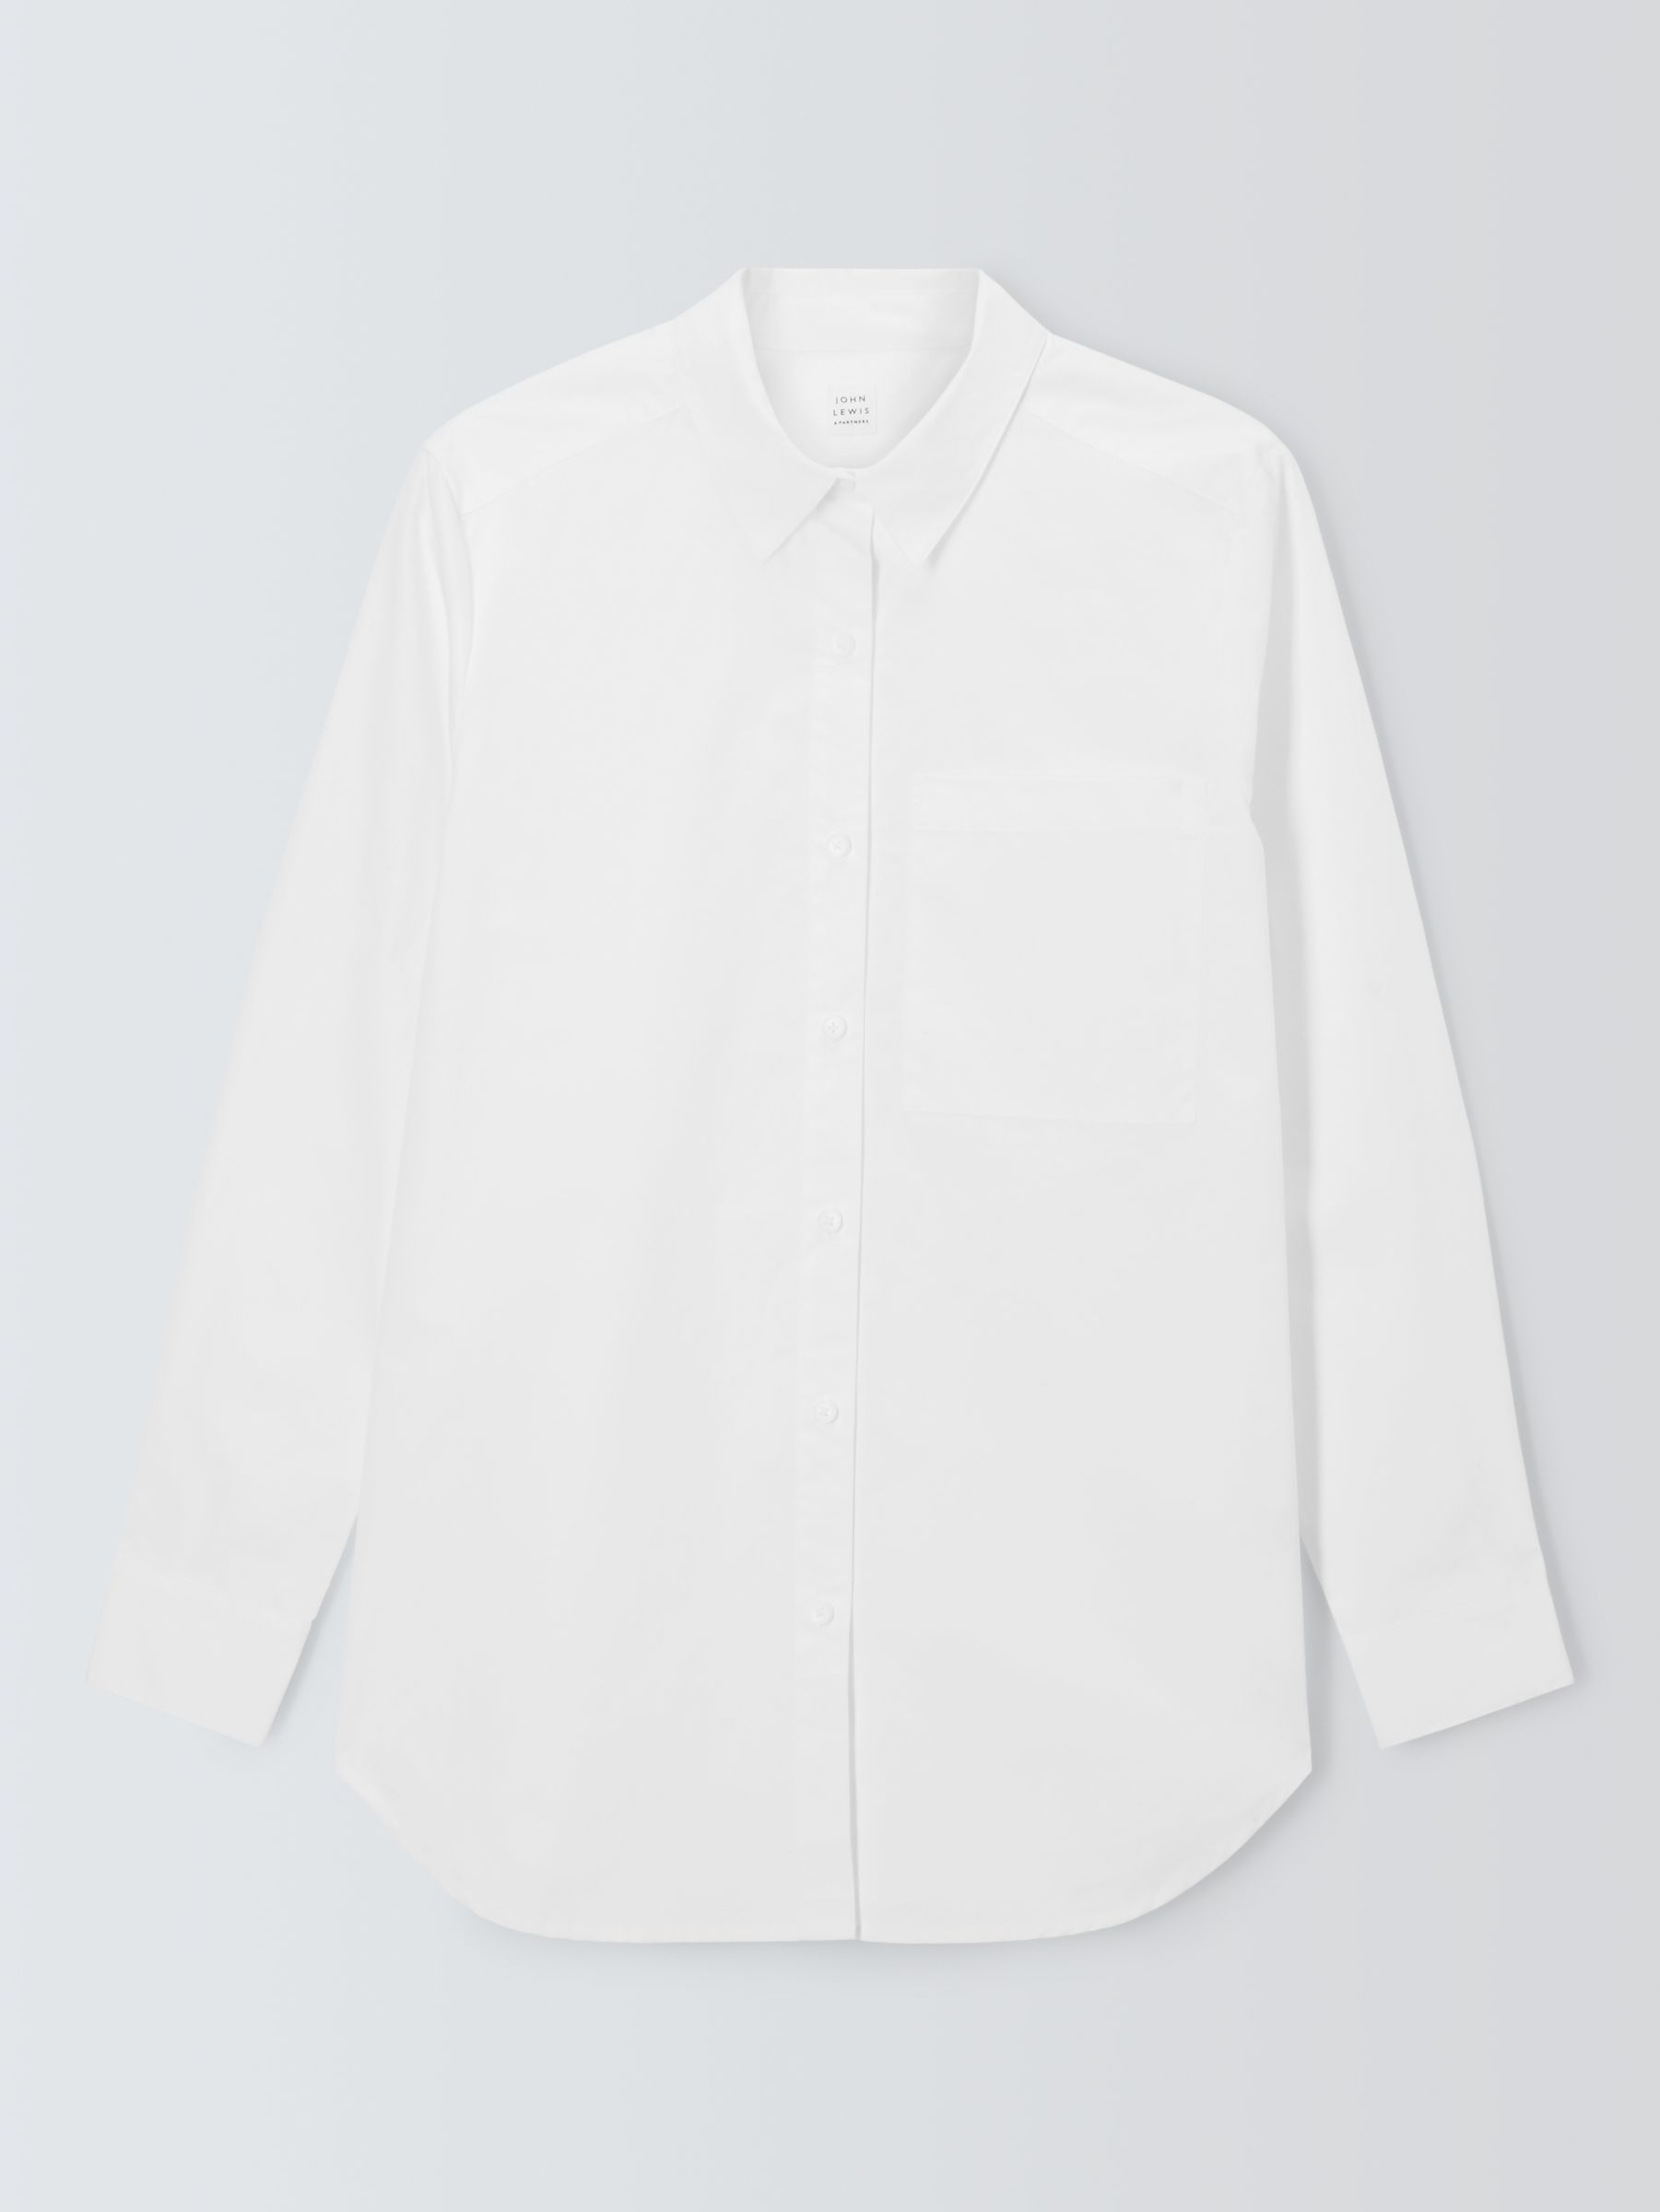 John Lewis Cotton Relaxed Shirt, White, 8